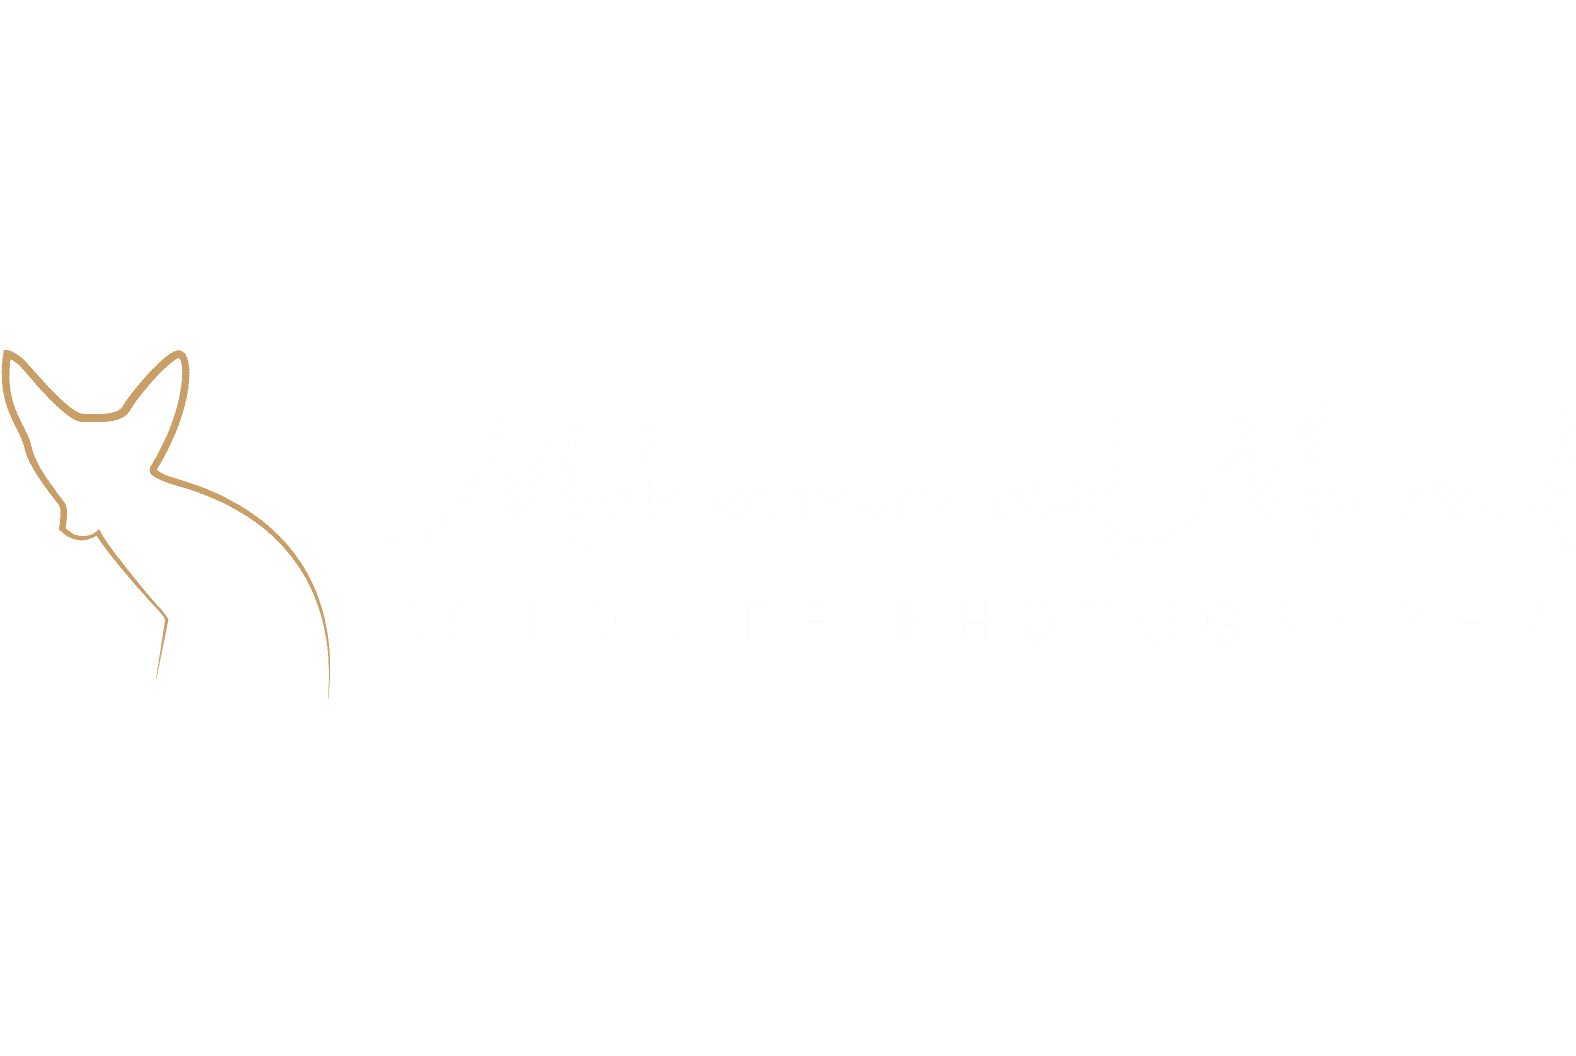 Mohammad Murad